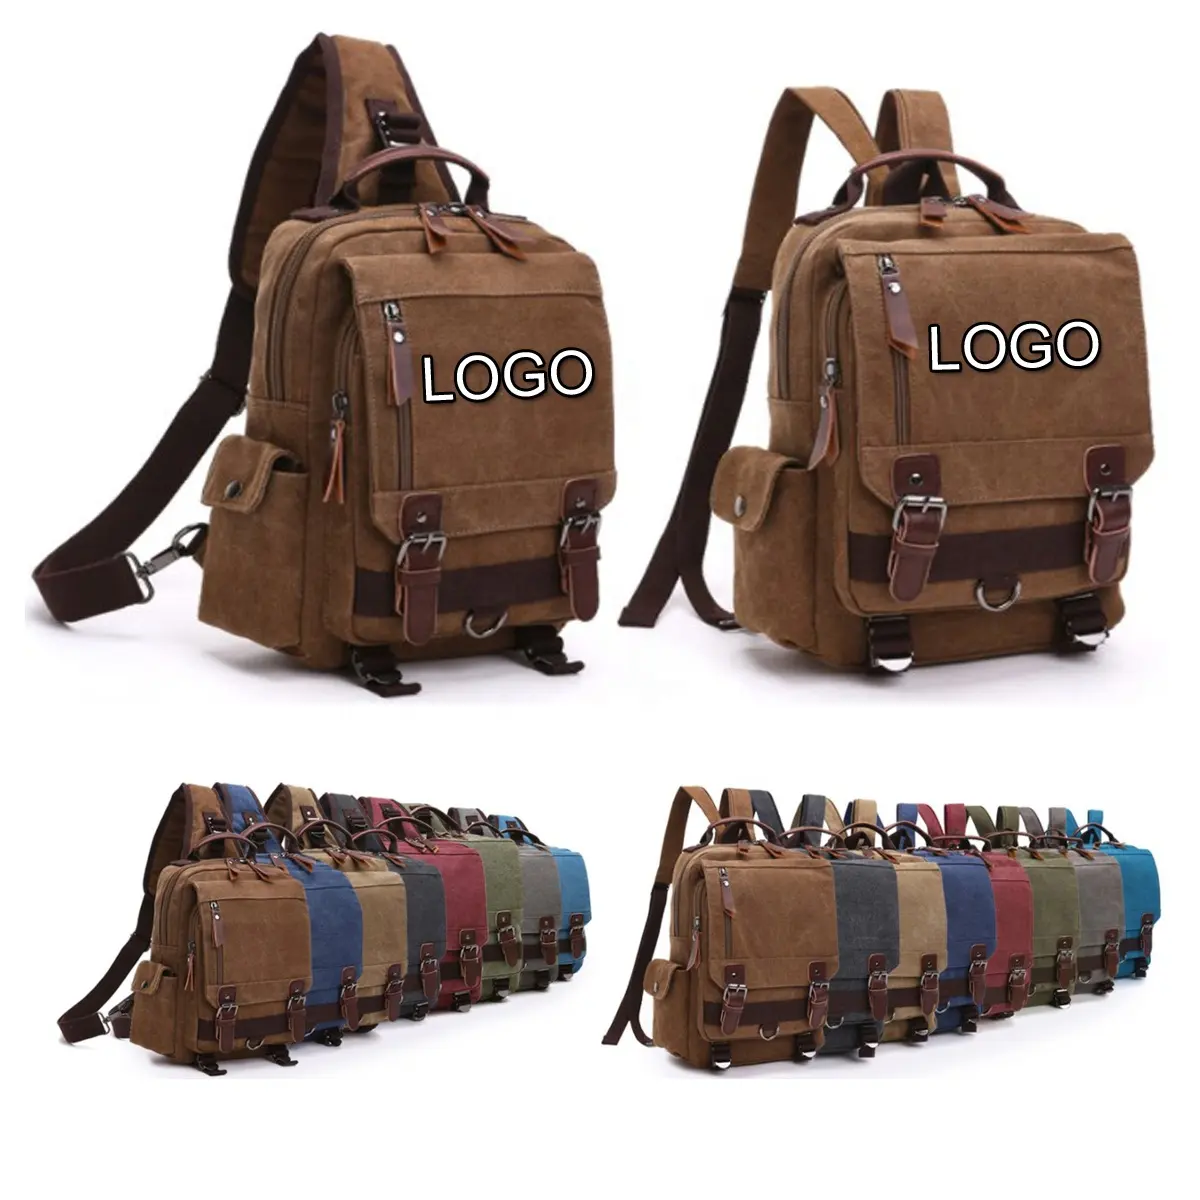 Amazon Hot Sale 8 Colors Canvas Sling Bag Travel Laptop Backpack Outdoor Cross Body Bag Messenger Shoulder Bag